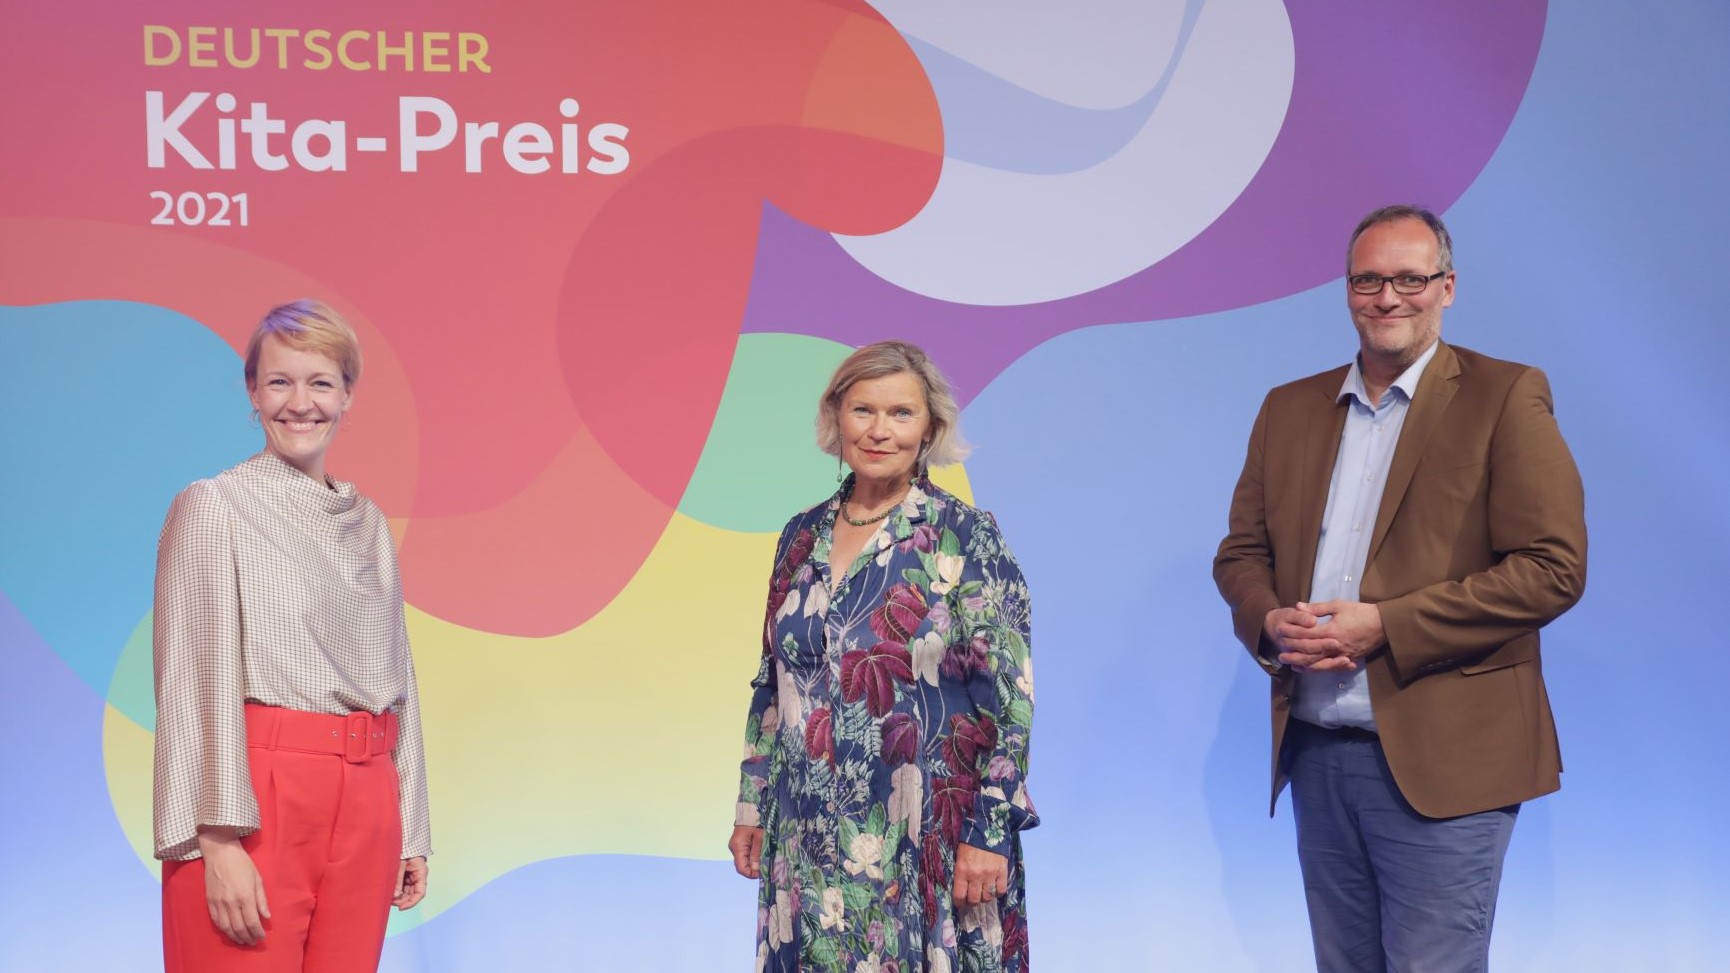 Anne Rolvering, Dr. Heike Kahl und Frank Hinte bei der Preisverleihung des Deutschen Kita-Preises 2021